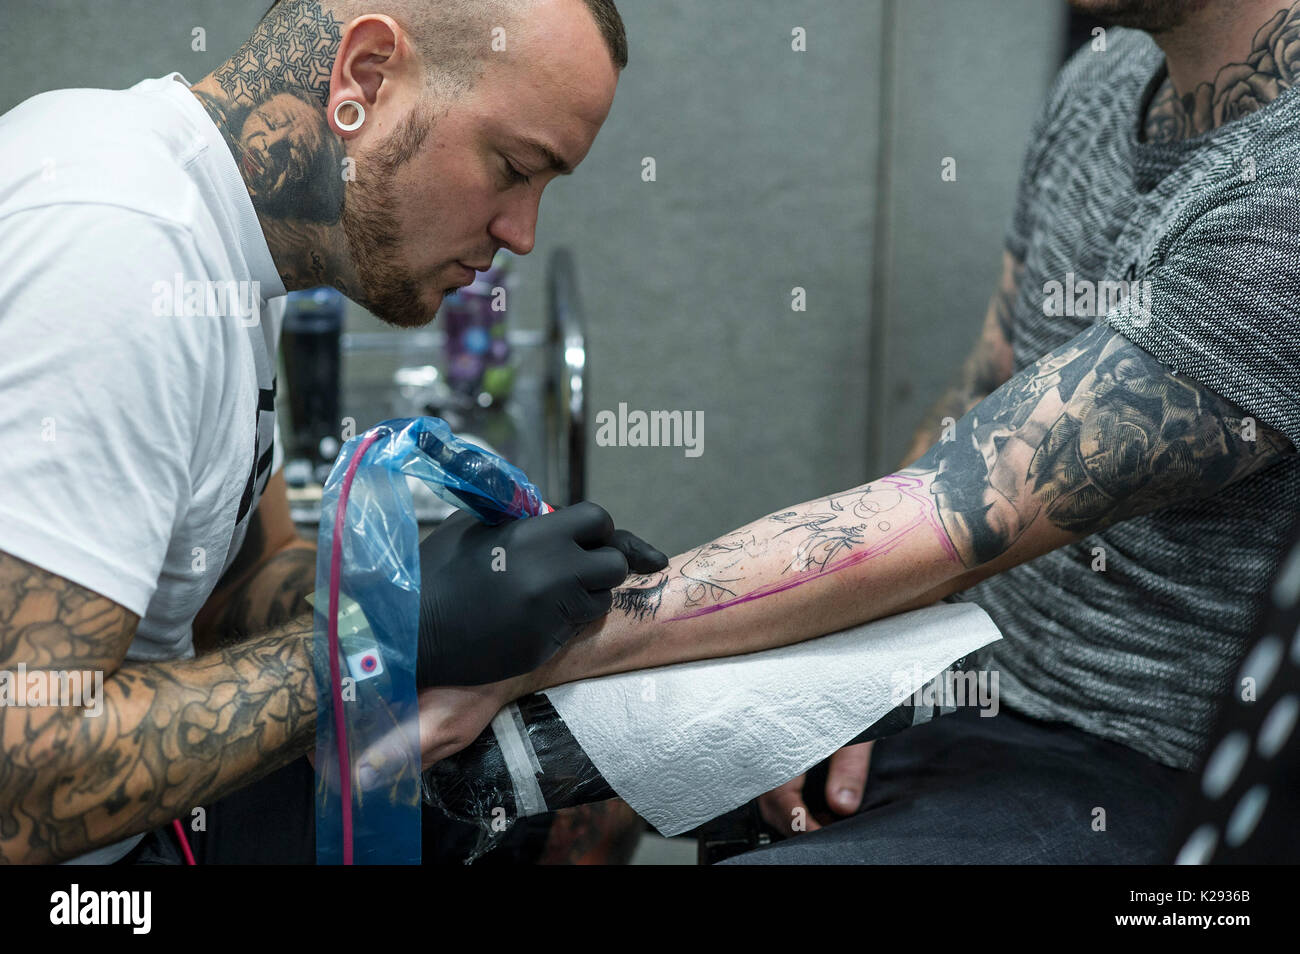 Le tatouage. Un tatoueur de travailler sur l'avant-bras d'un client à la Convention de Tatouage de Cornwall. Banque D'Images